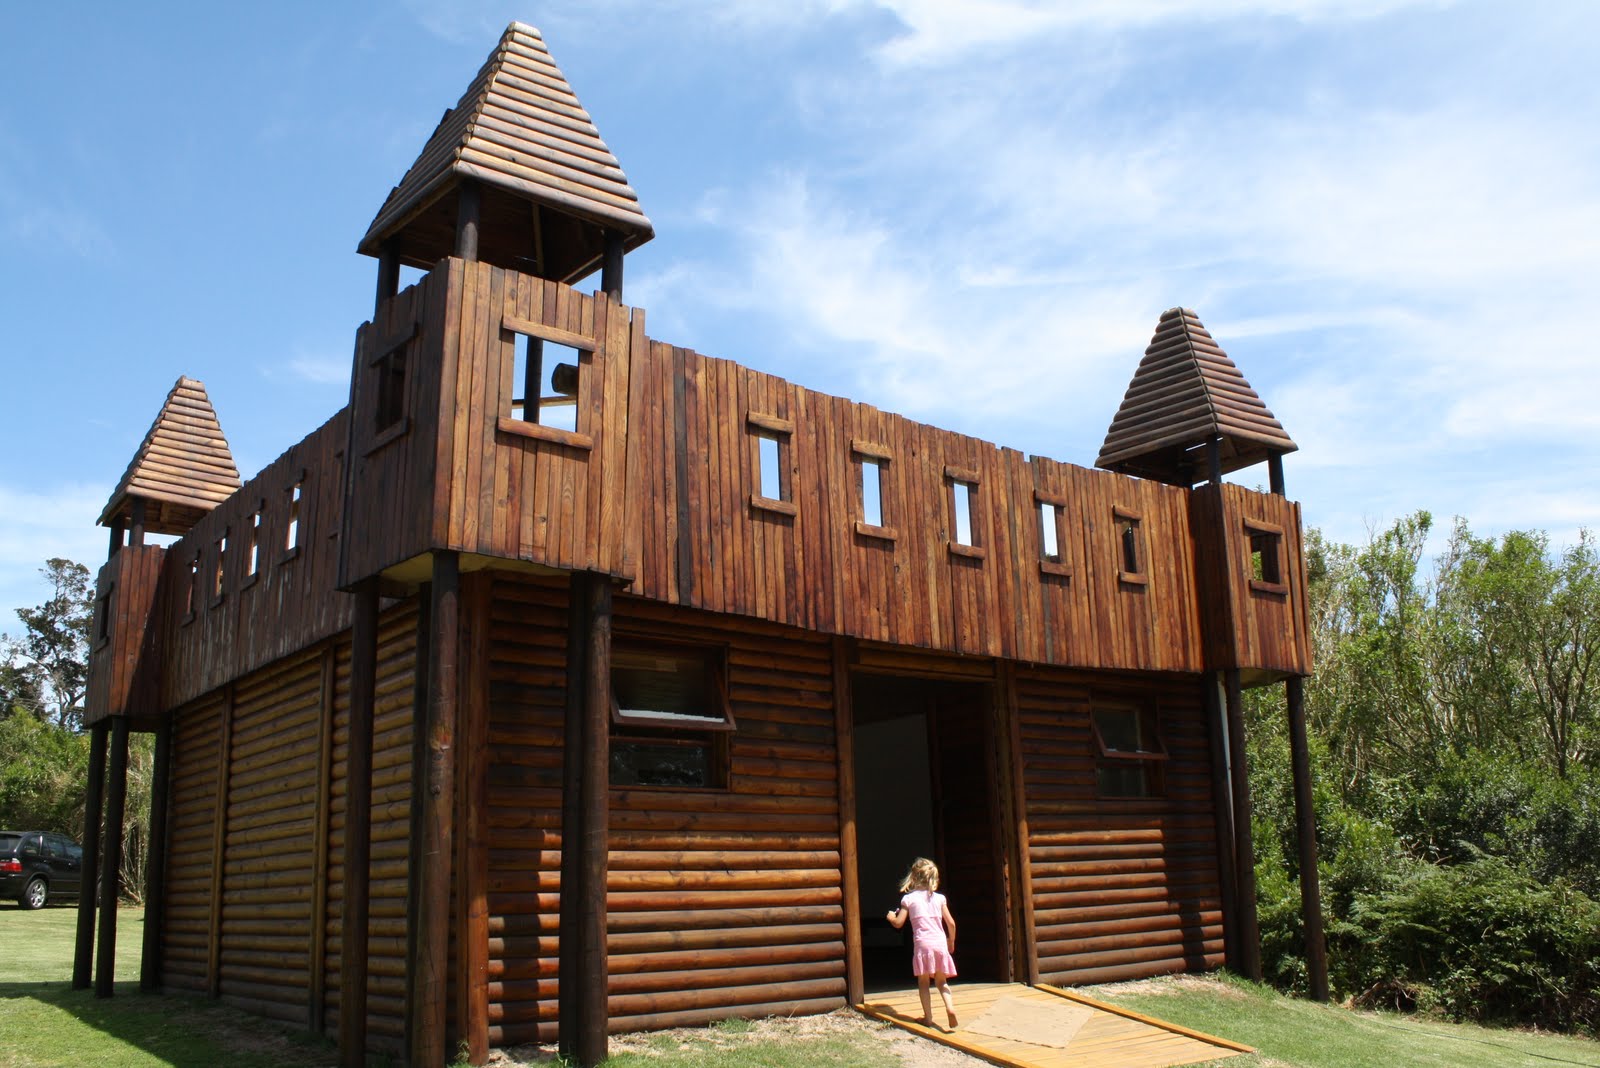 a wooden castle